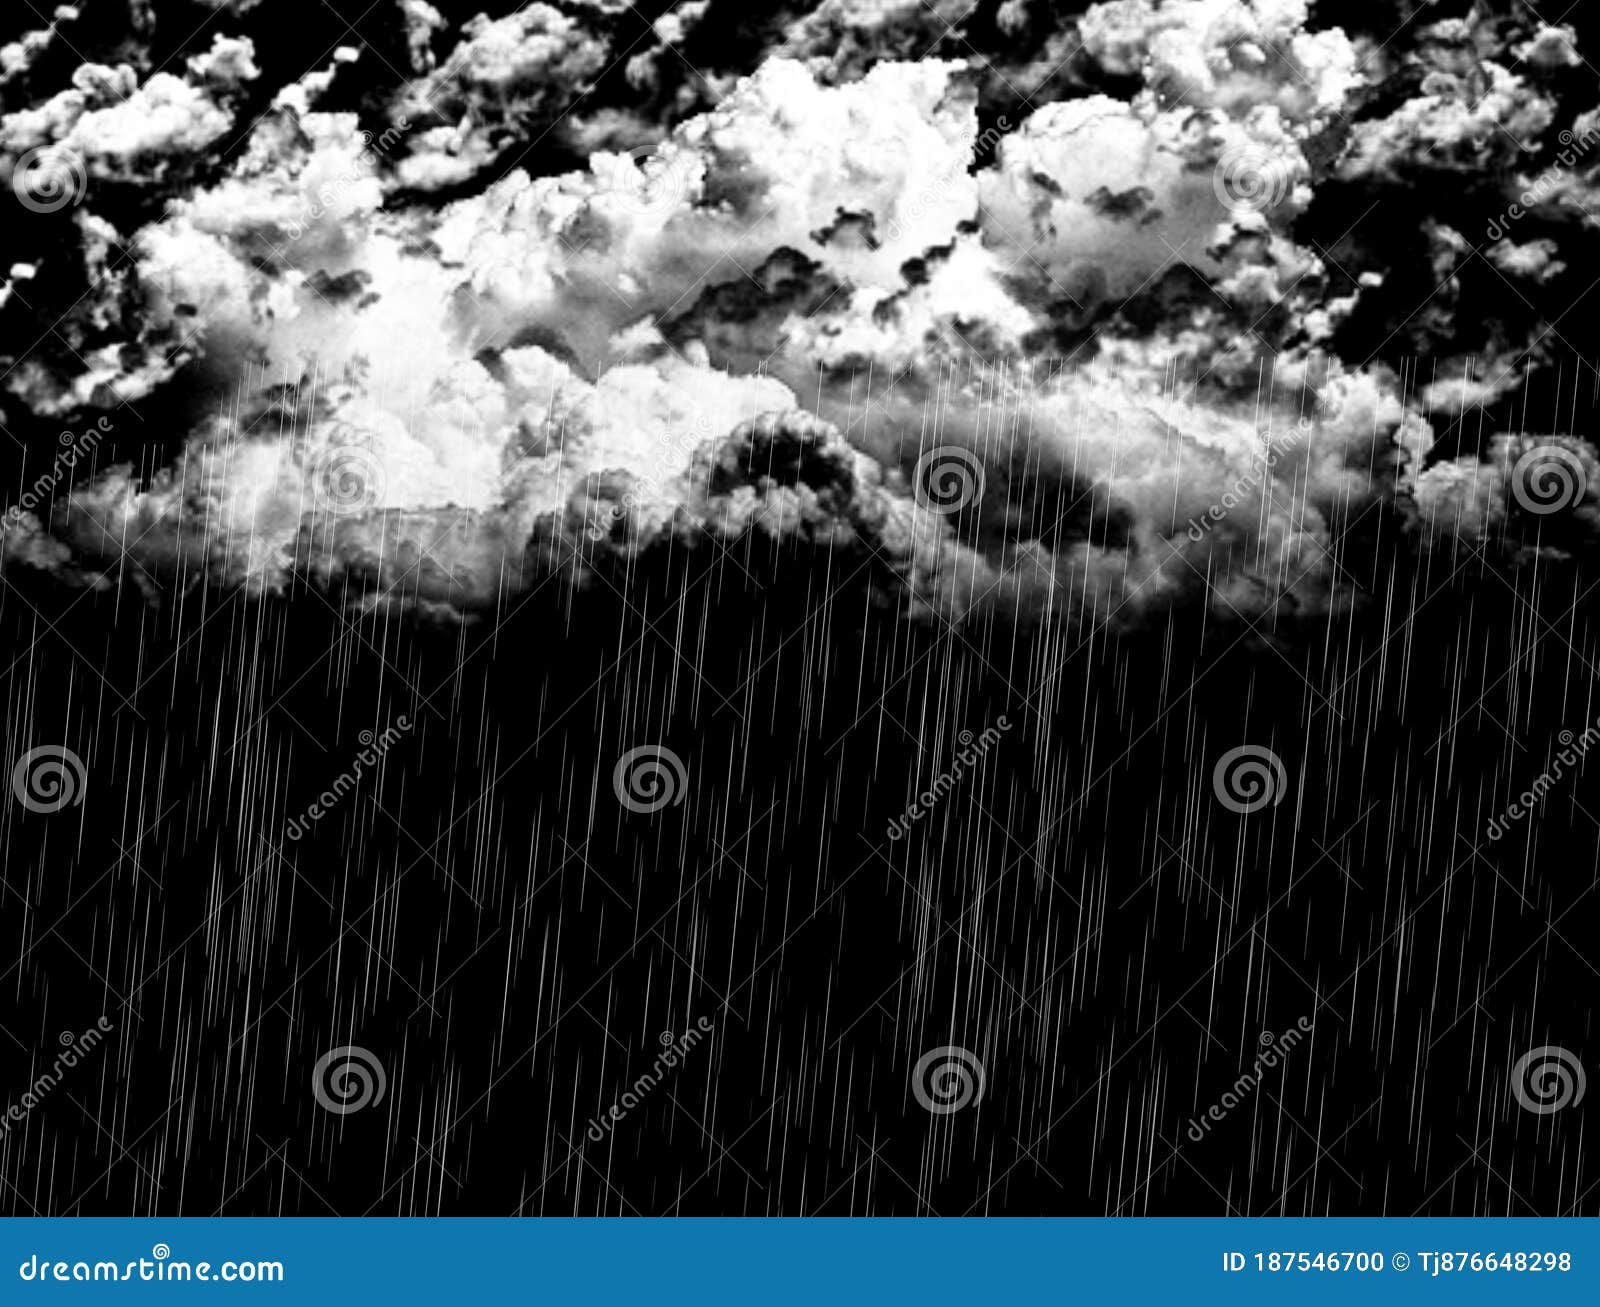 Hãy ngắm ảnh với mây trắng dày và mưa rơi trên nền đen - một cảnh tượng đẹp như trở thành hình ảnh thiên nhiên sống động. Cùng đắm chìm trong sự bình yên và dịu dàng của mưa rơi vào đêm tối.